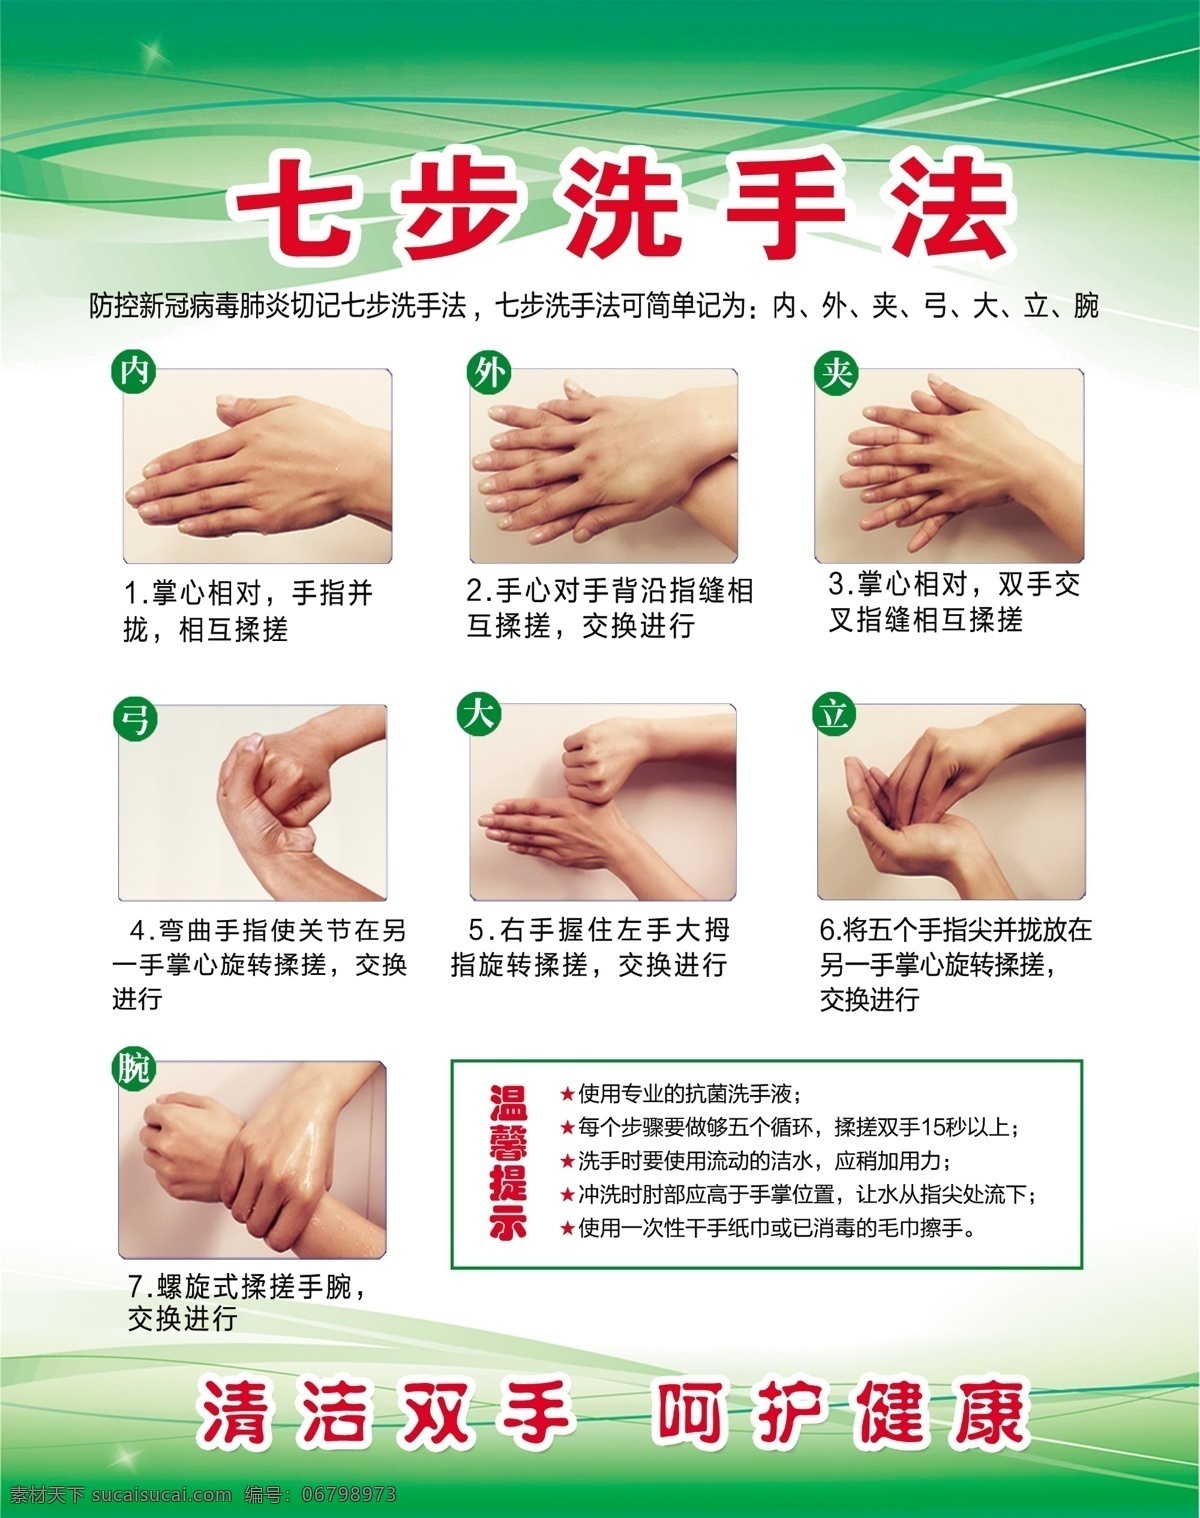 七步洗手法 绿底色 抗疫情 清洁双手 呵护健康 分层